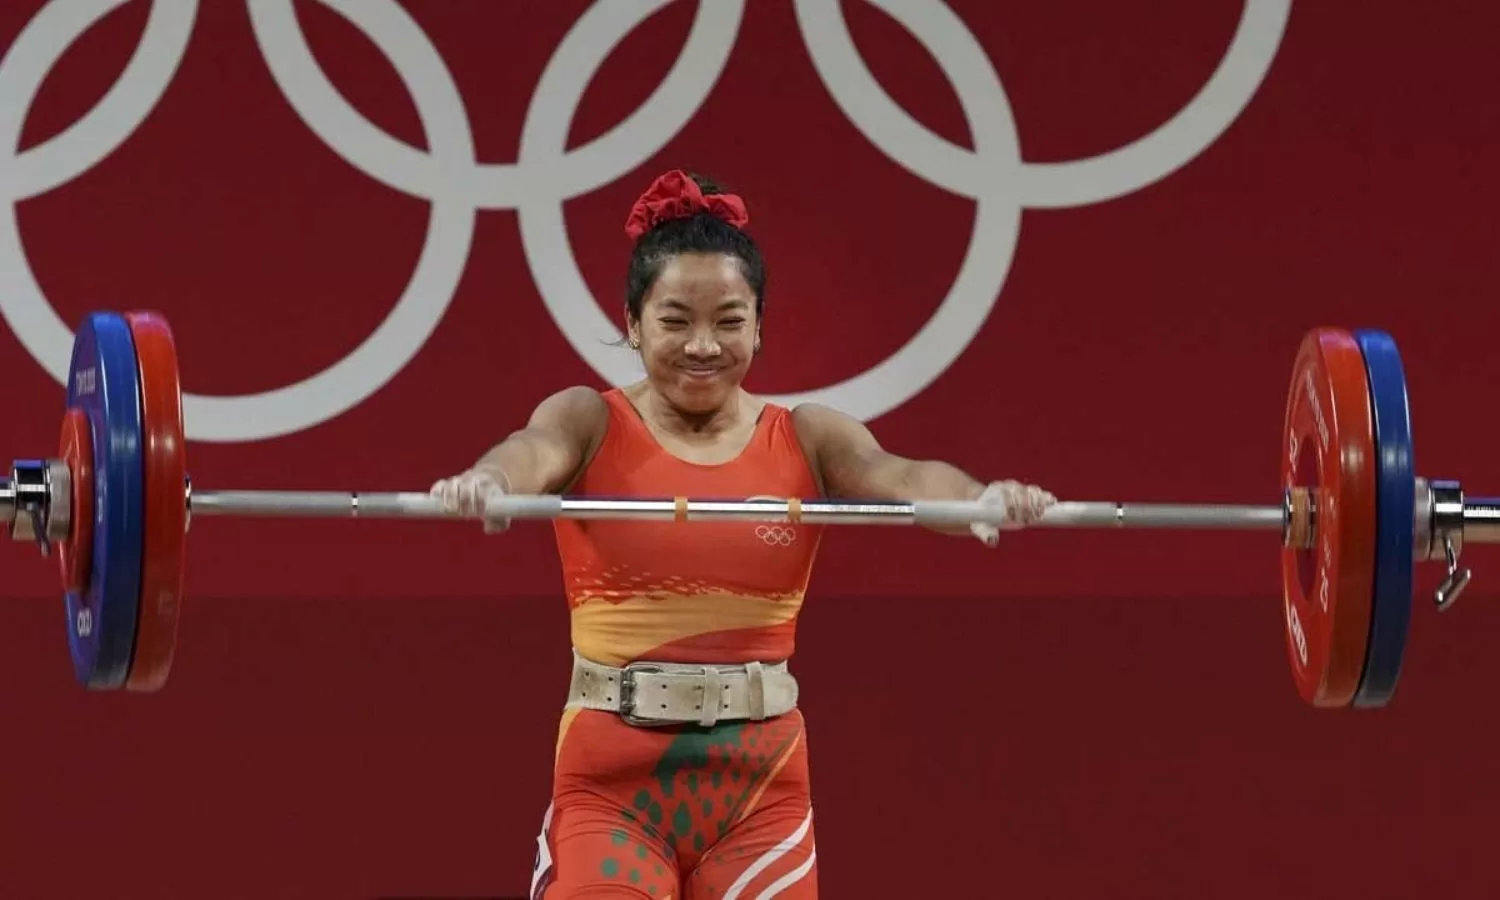 Can Mirabai Chanu win another Olympic medal at Paris 2024?